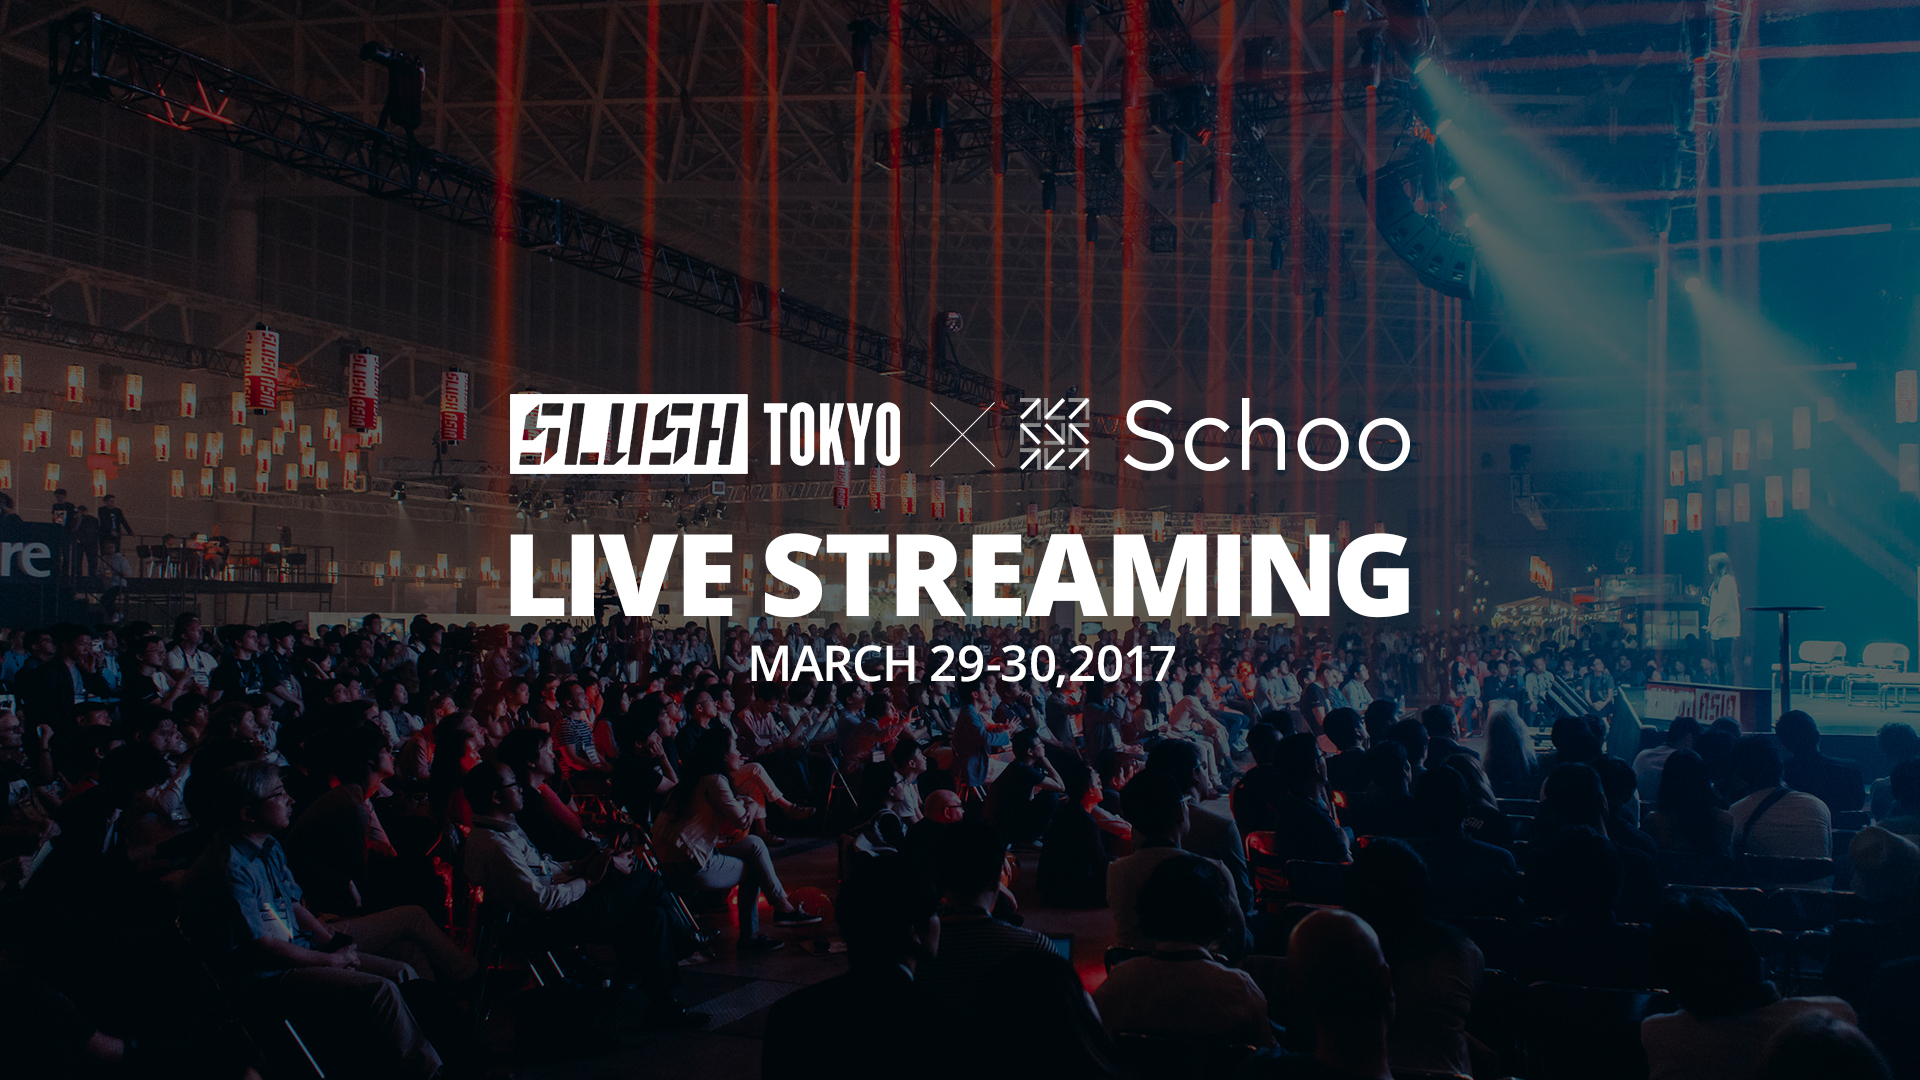 オンライン動画学習サービス Schoo が東京ビッグサイトで開催される世界最大級のスタートアップイベント Slush Tokyo 17 を2日間無料 生中継 株式会社schooのプレスリリース